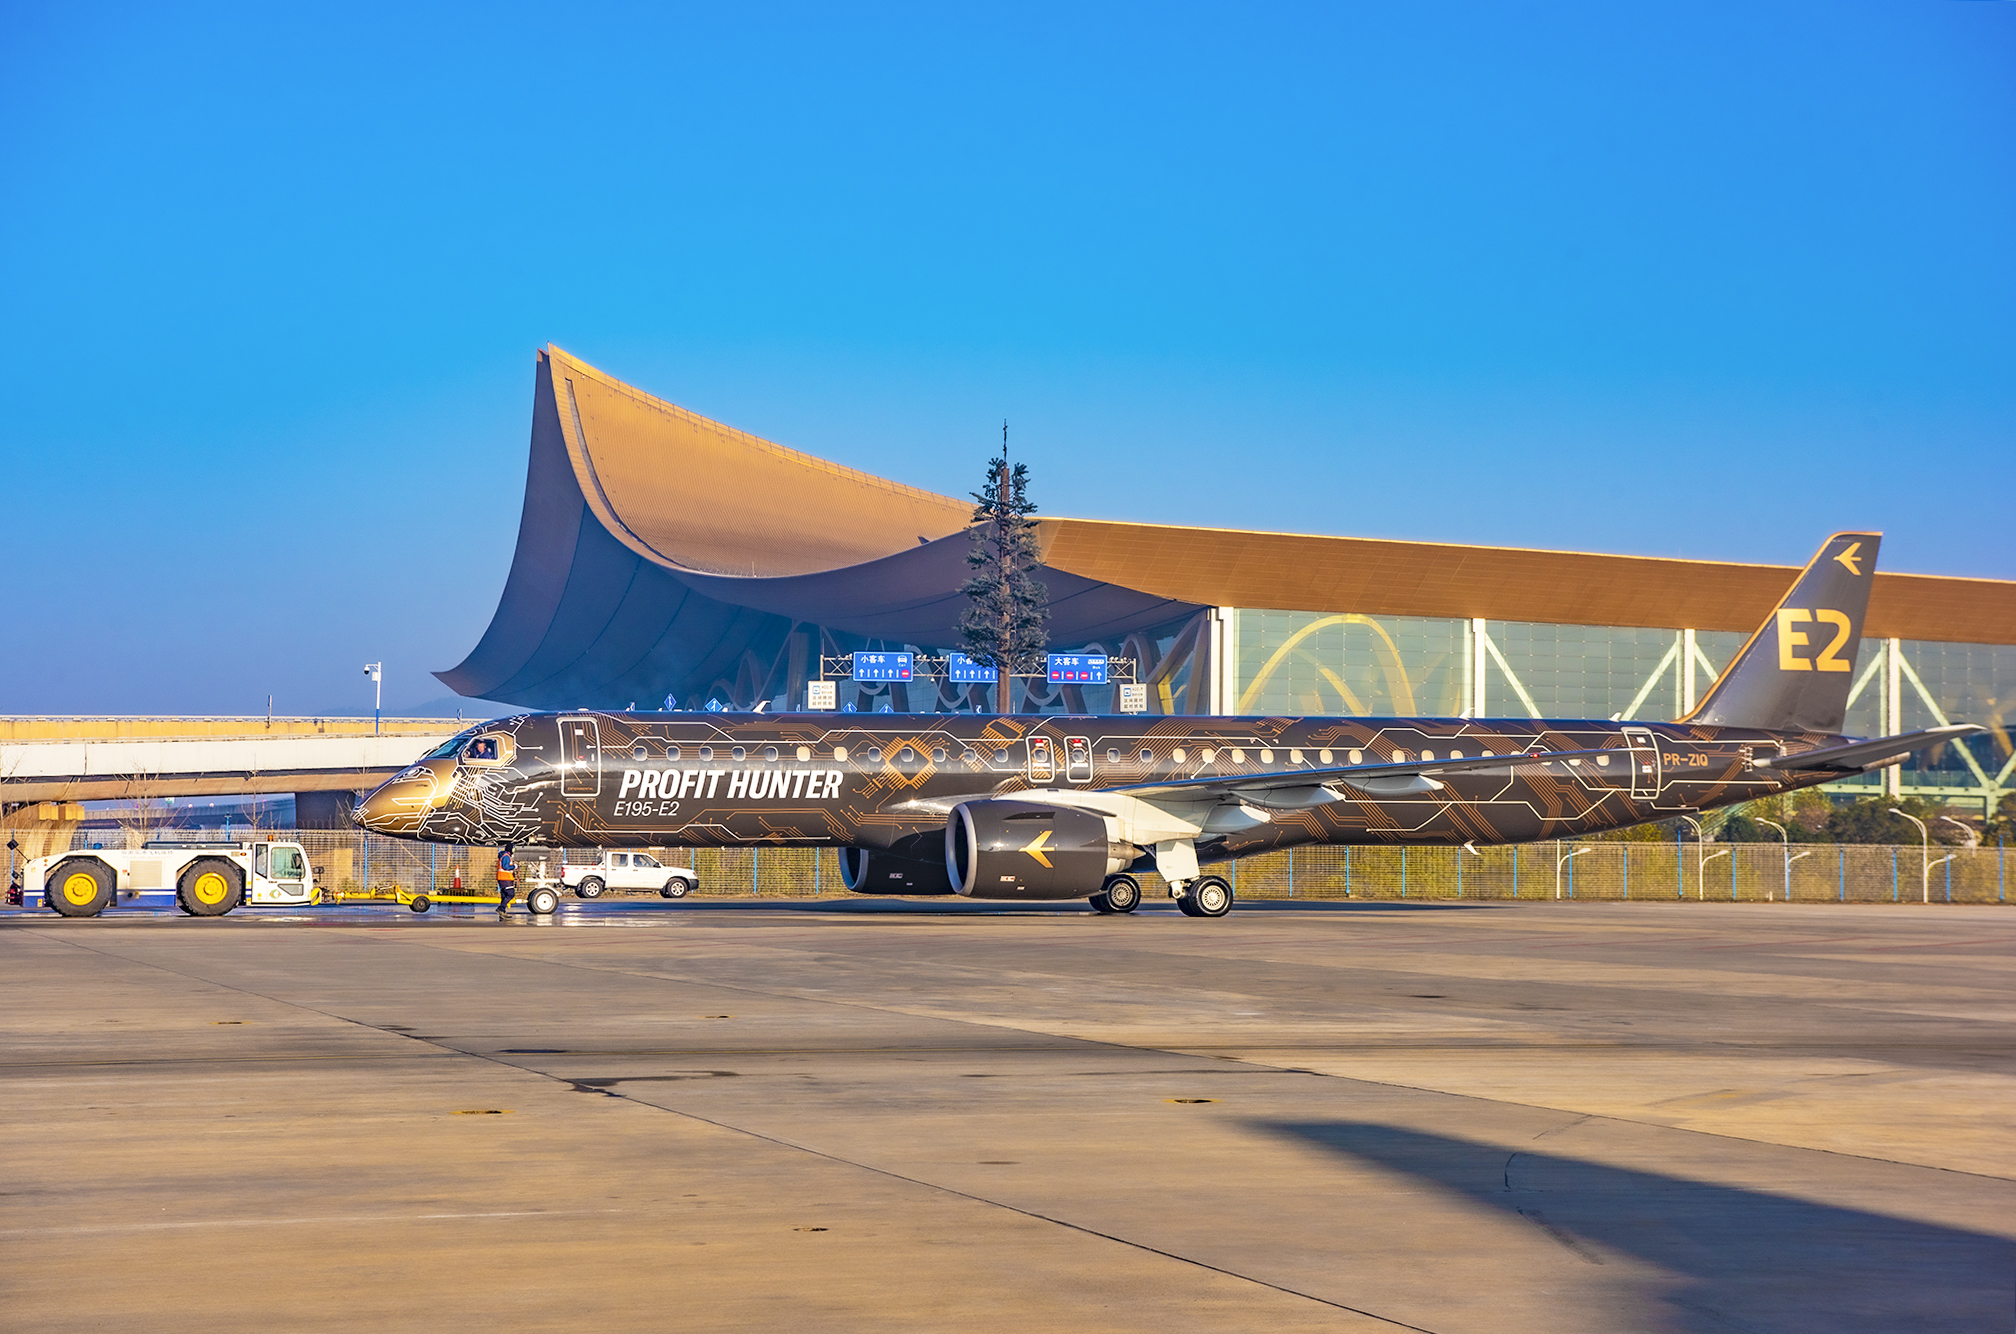 "工程狮"飞抵昆明长水国际机场展示暨中国民航支线航空论坛在昆明举行